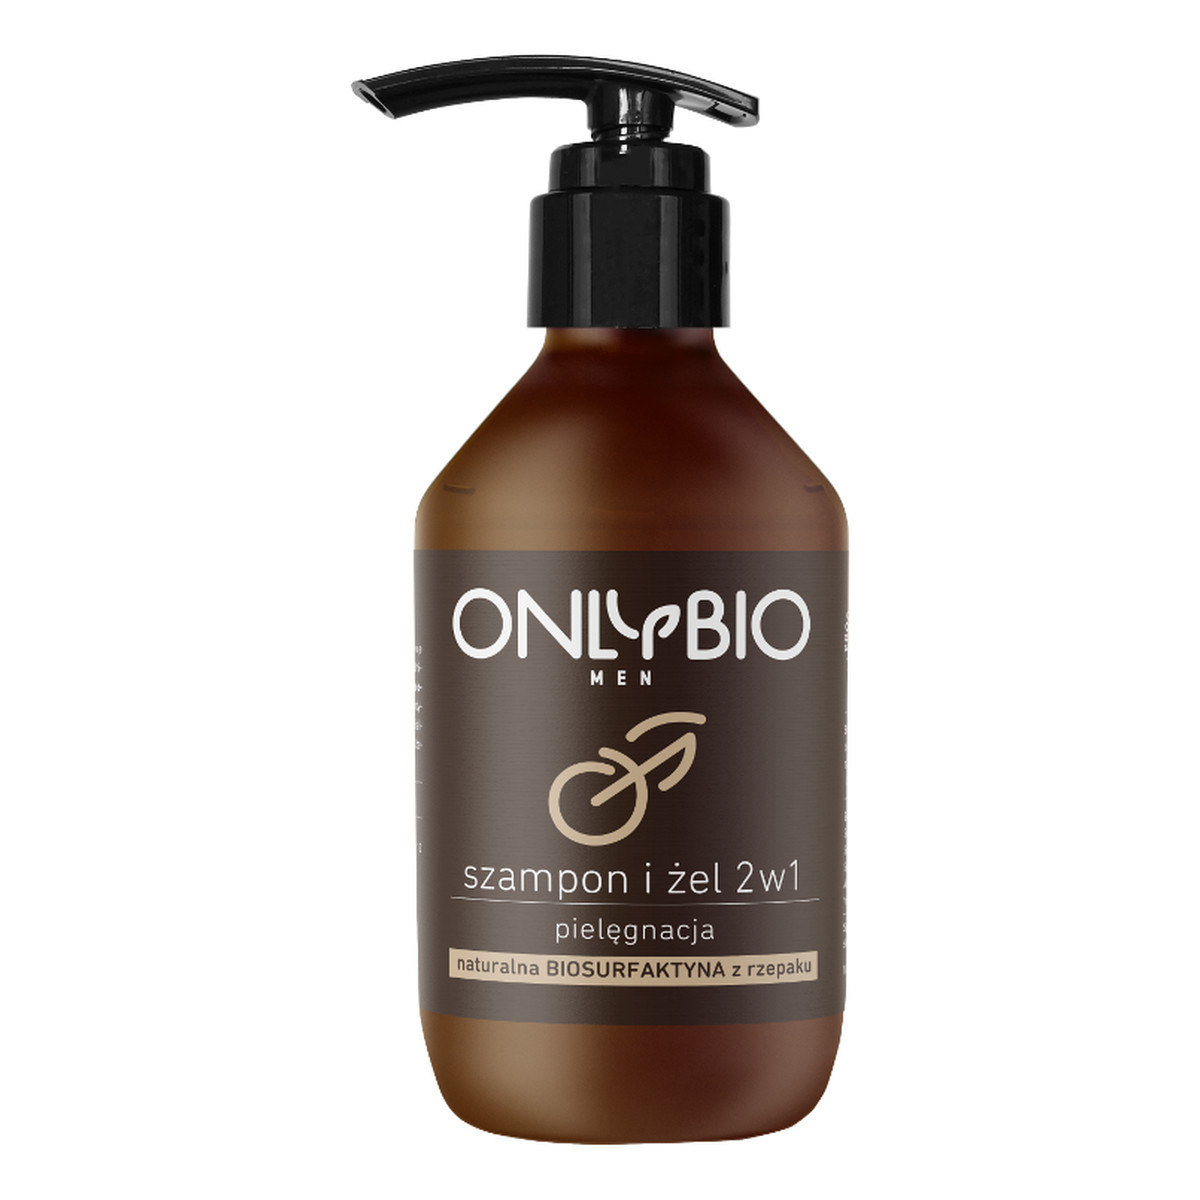 OnlyBio Men szampon i żel 2w1 z olejem ze rzepaku 250ml